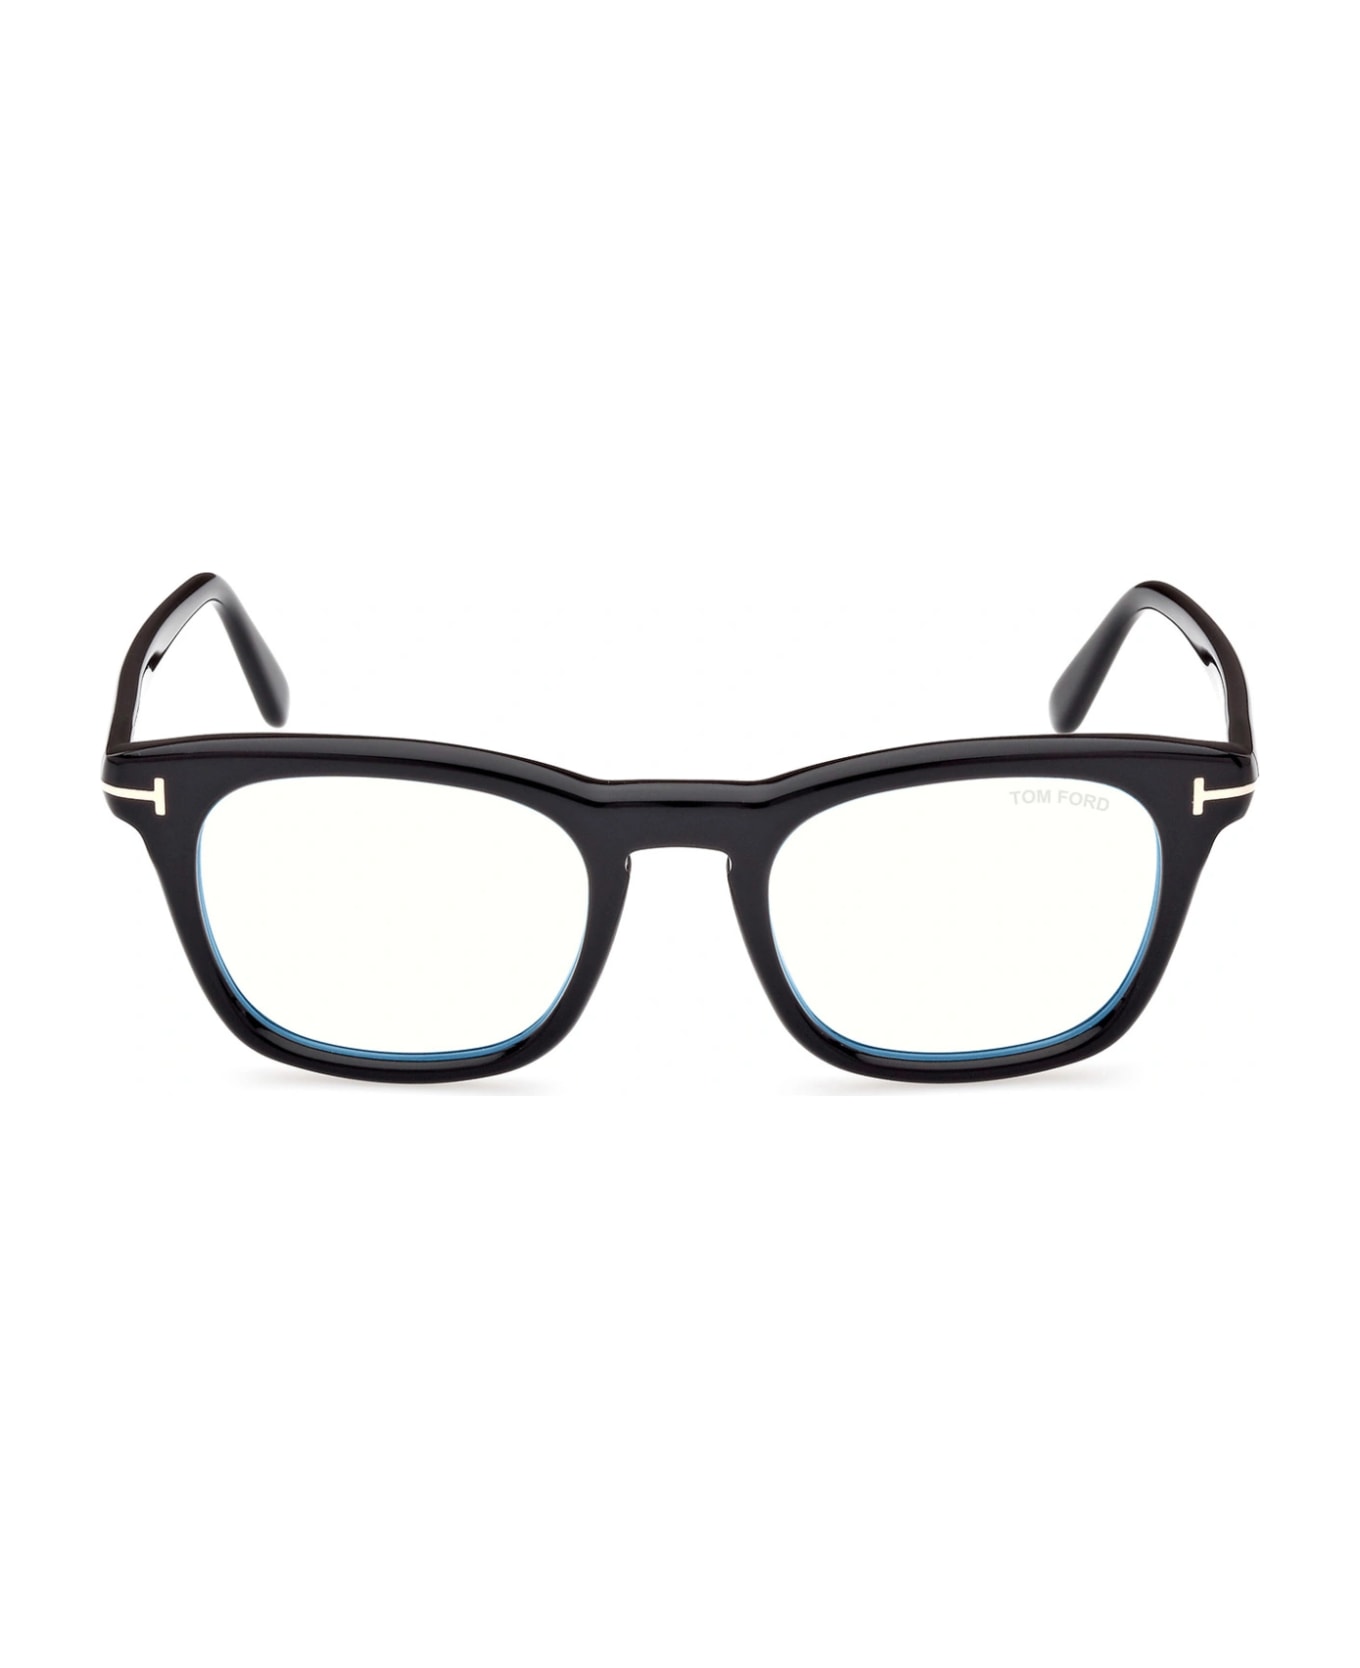 Tom Ford Eyewear TF5870 001 Glasses アイウェア